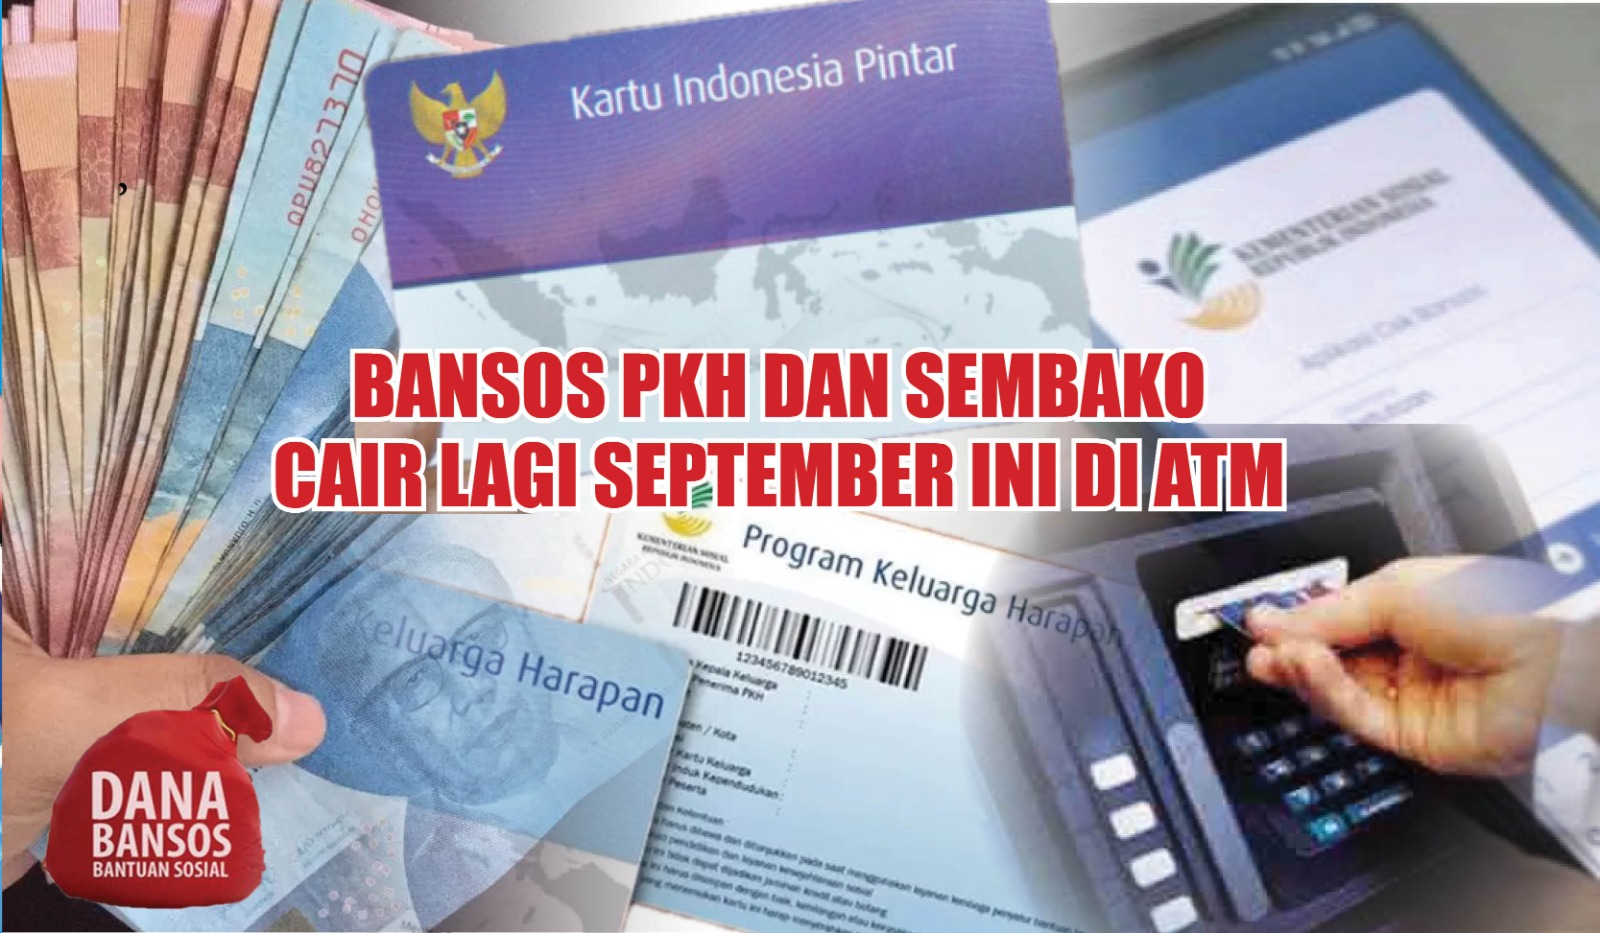 Bansos PKH dan Sembako Cair Lagi September Ini di ATM, Ada Dana BLT PIP untuk Pelajar Rp1 Juta Masuk Rekening